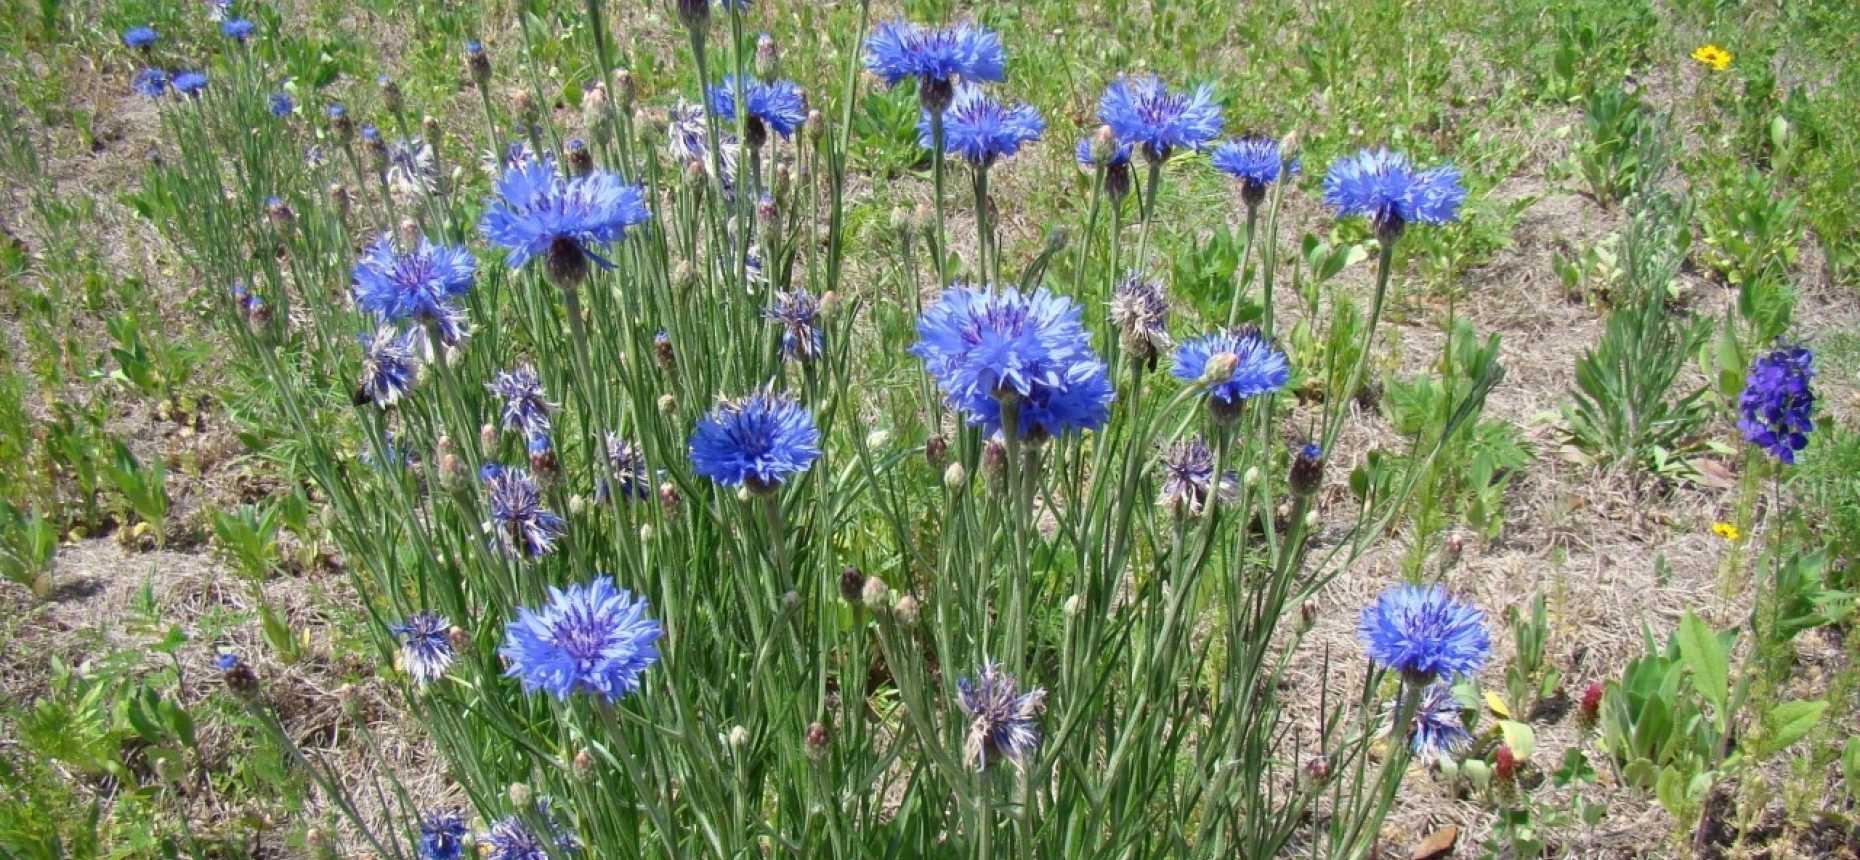 Растение синий василек: фото, описание, применение цветков в медицине и полезные свойства